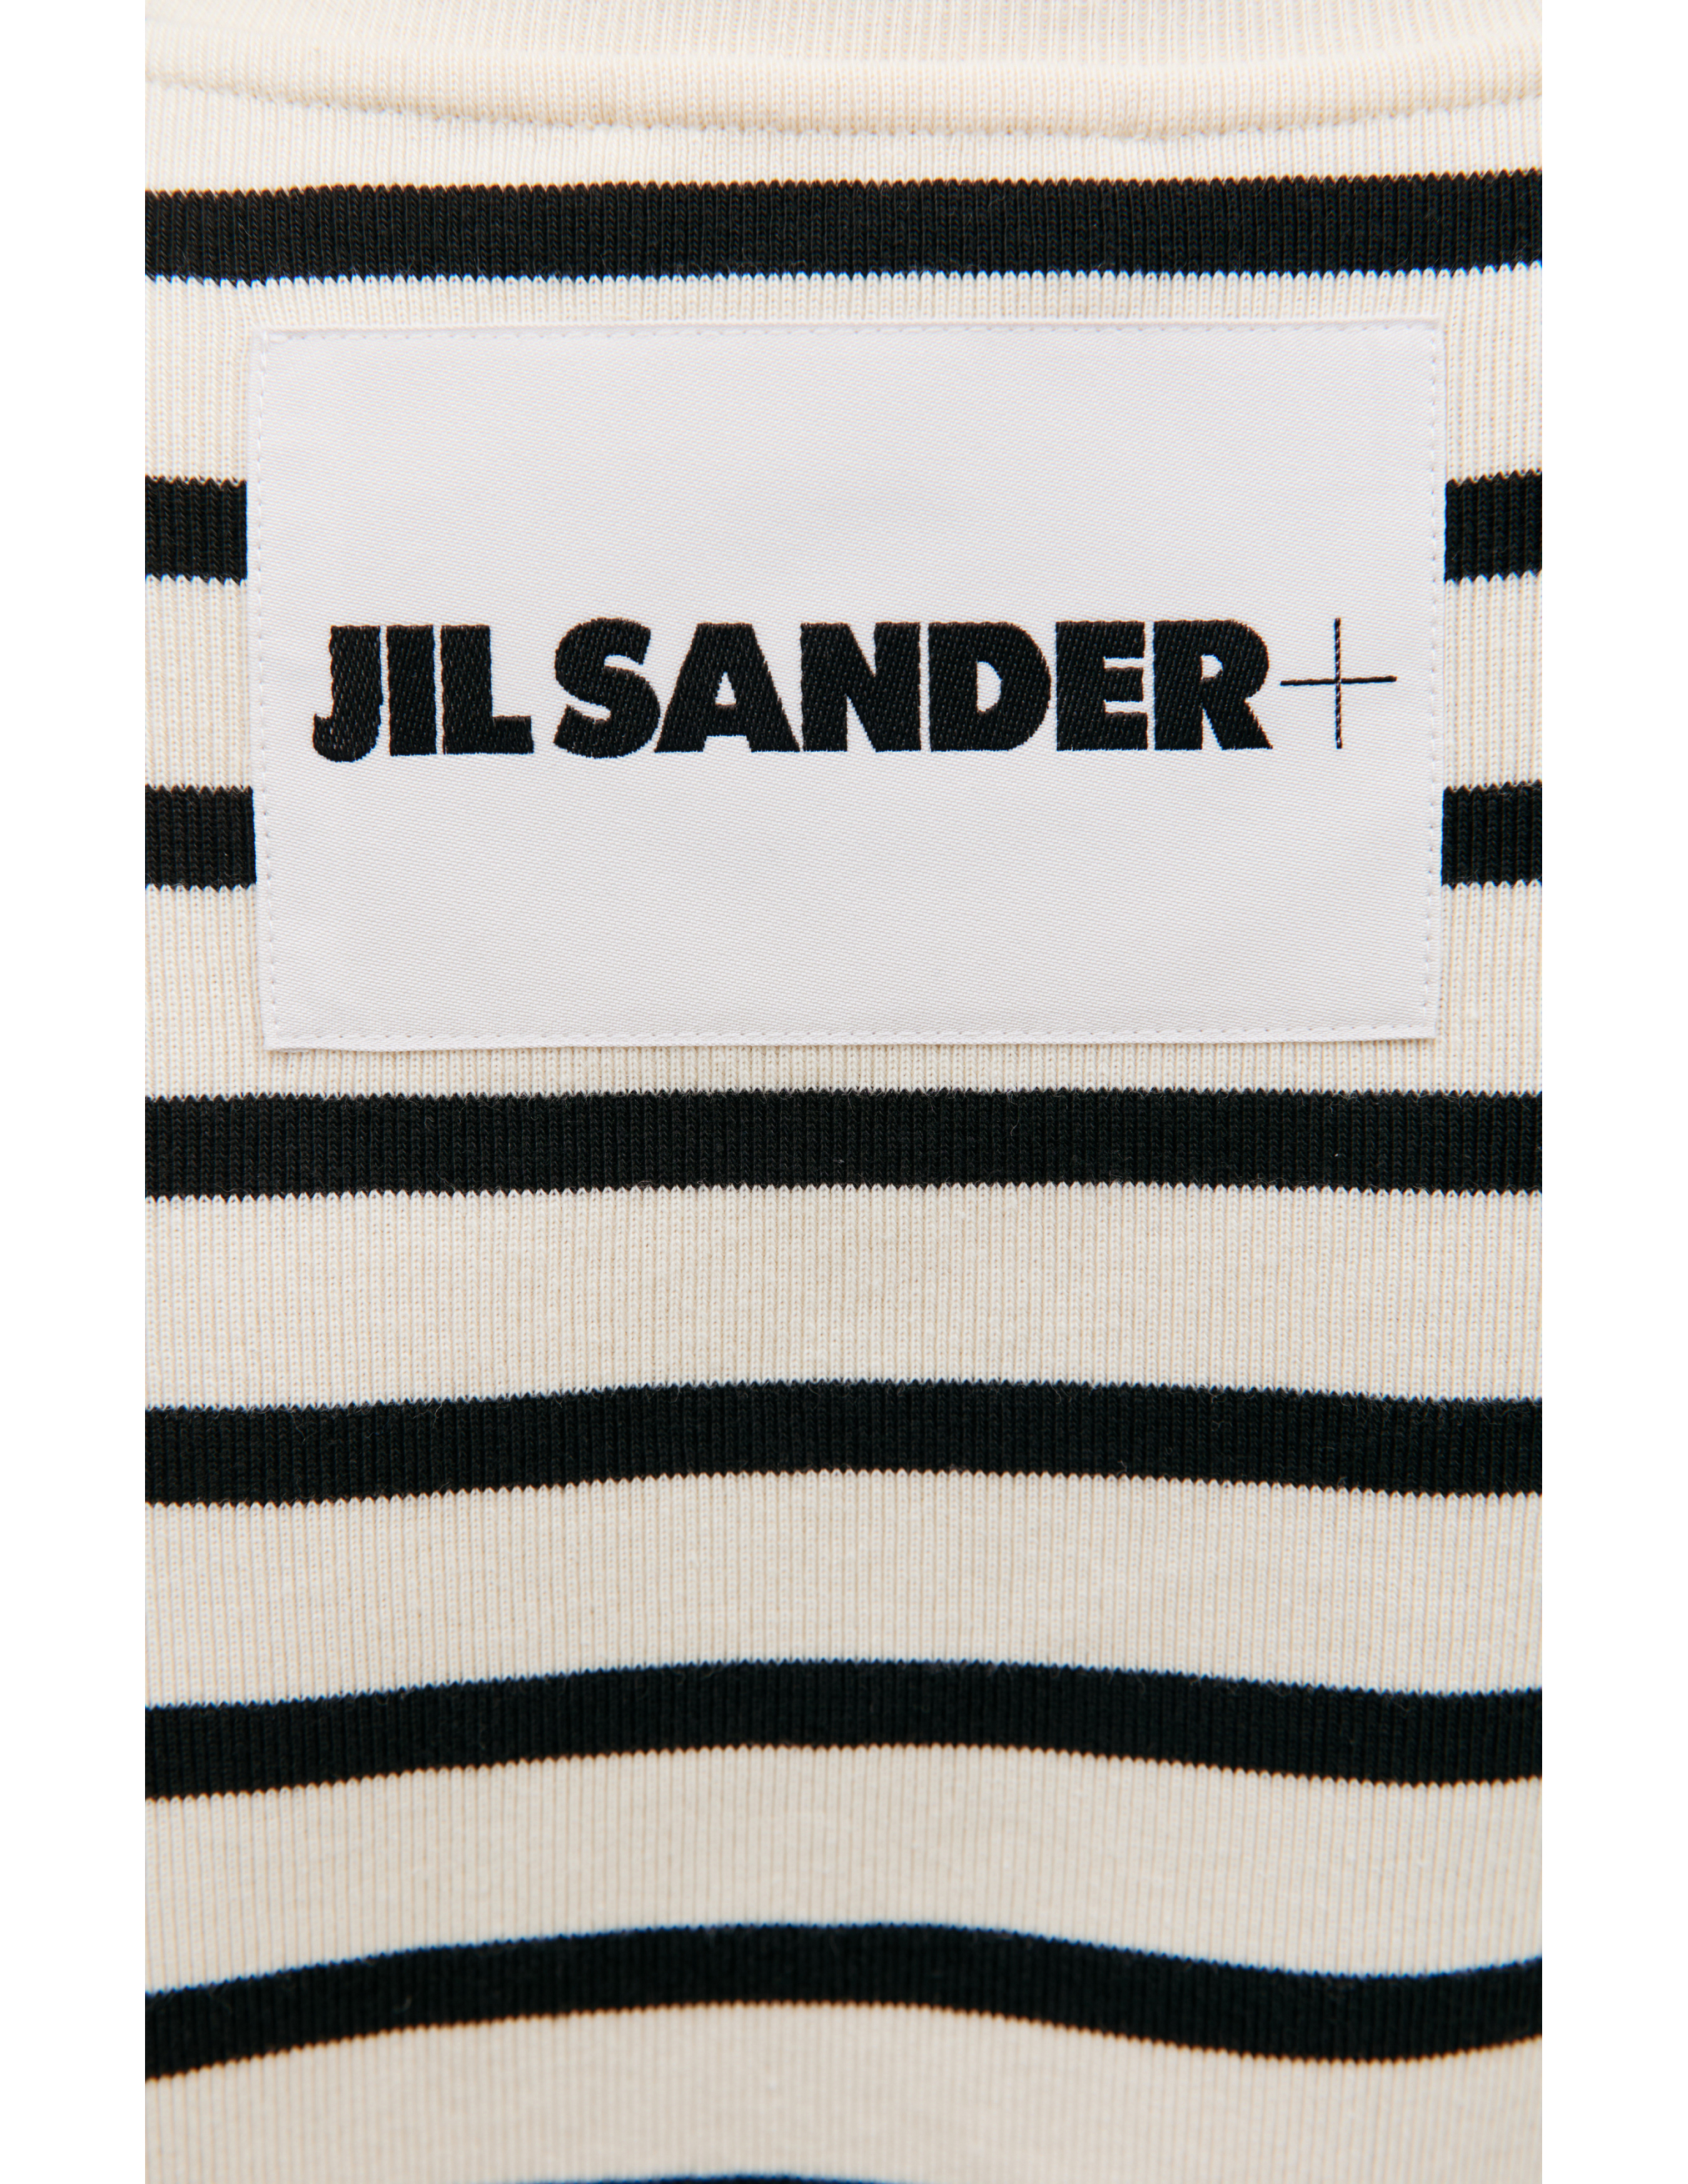 Хлопковая футболка в полоску Jil Sander J47GC0109/J46497/080, размер S;M;L;XL J47GC0109/J46497/080 - фото 4